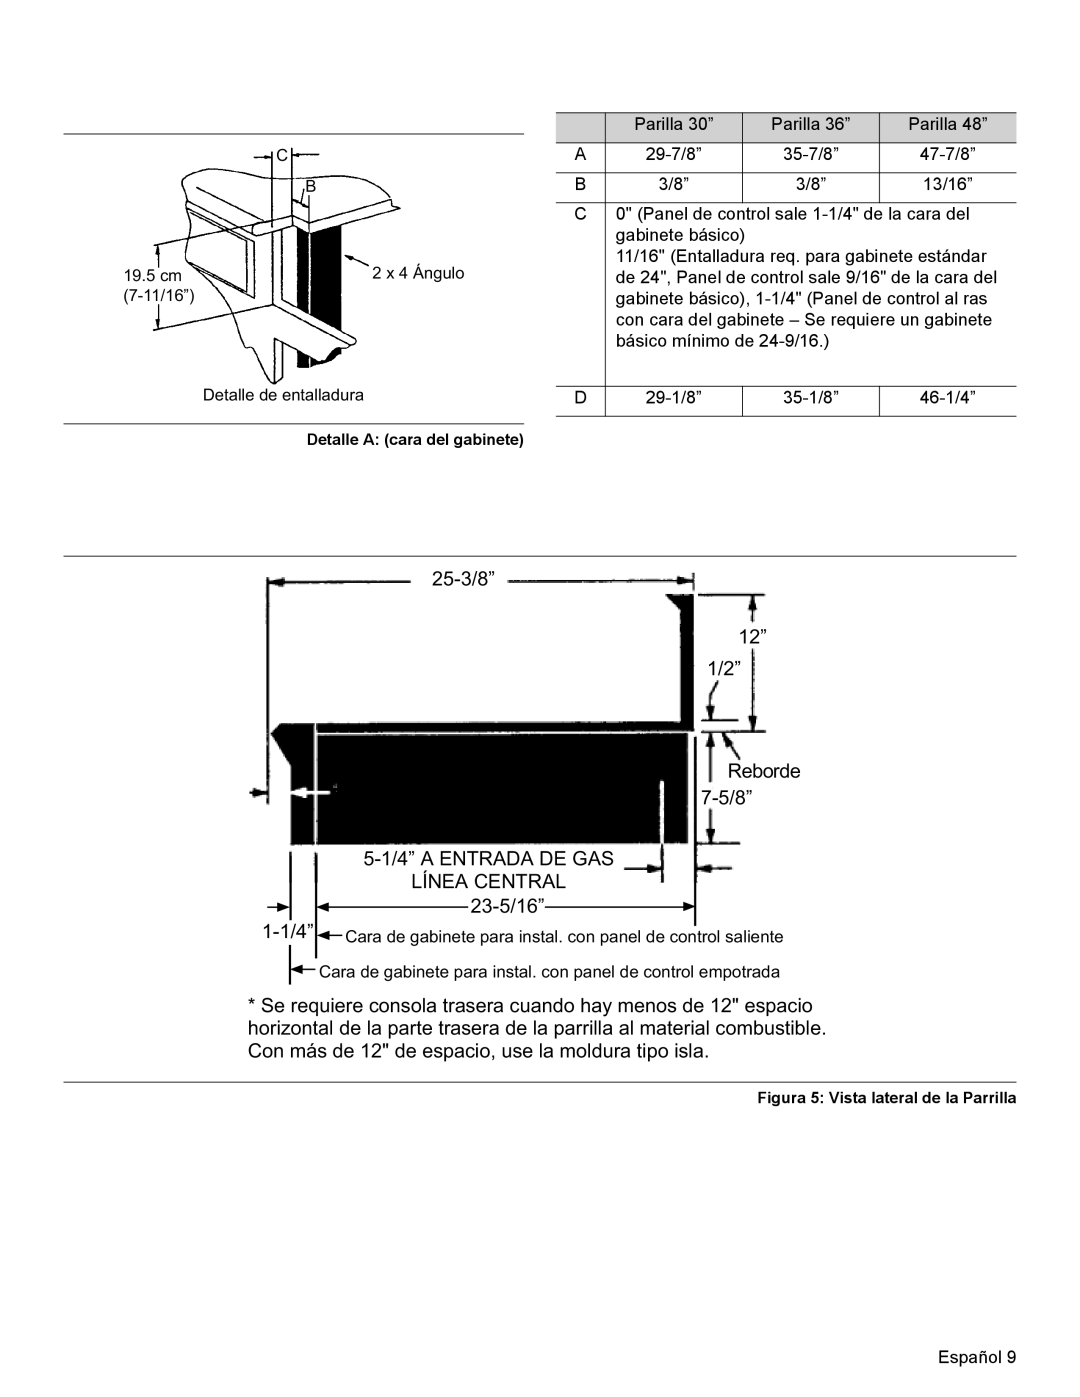 Thermador PCG36, PCG48, PCG30 installation manual 25-3/8” 12” 1/2” Reborde 7-5/8” 5-1/4” A ENTRADA DE GAS 